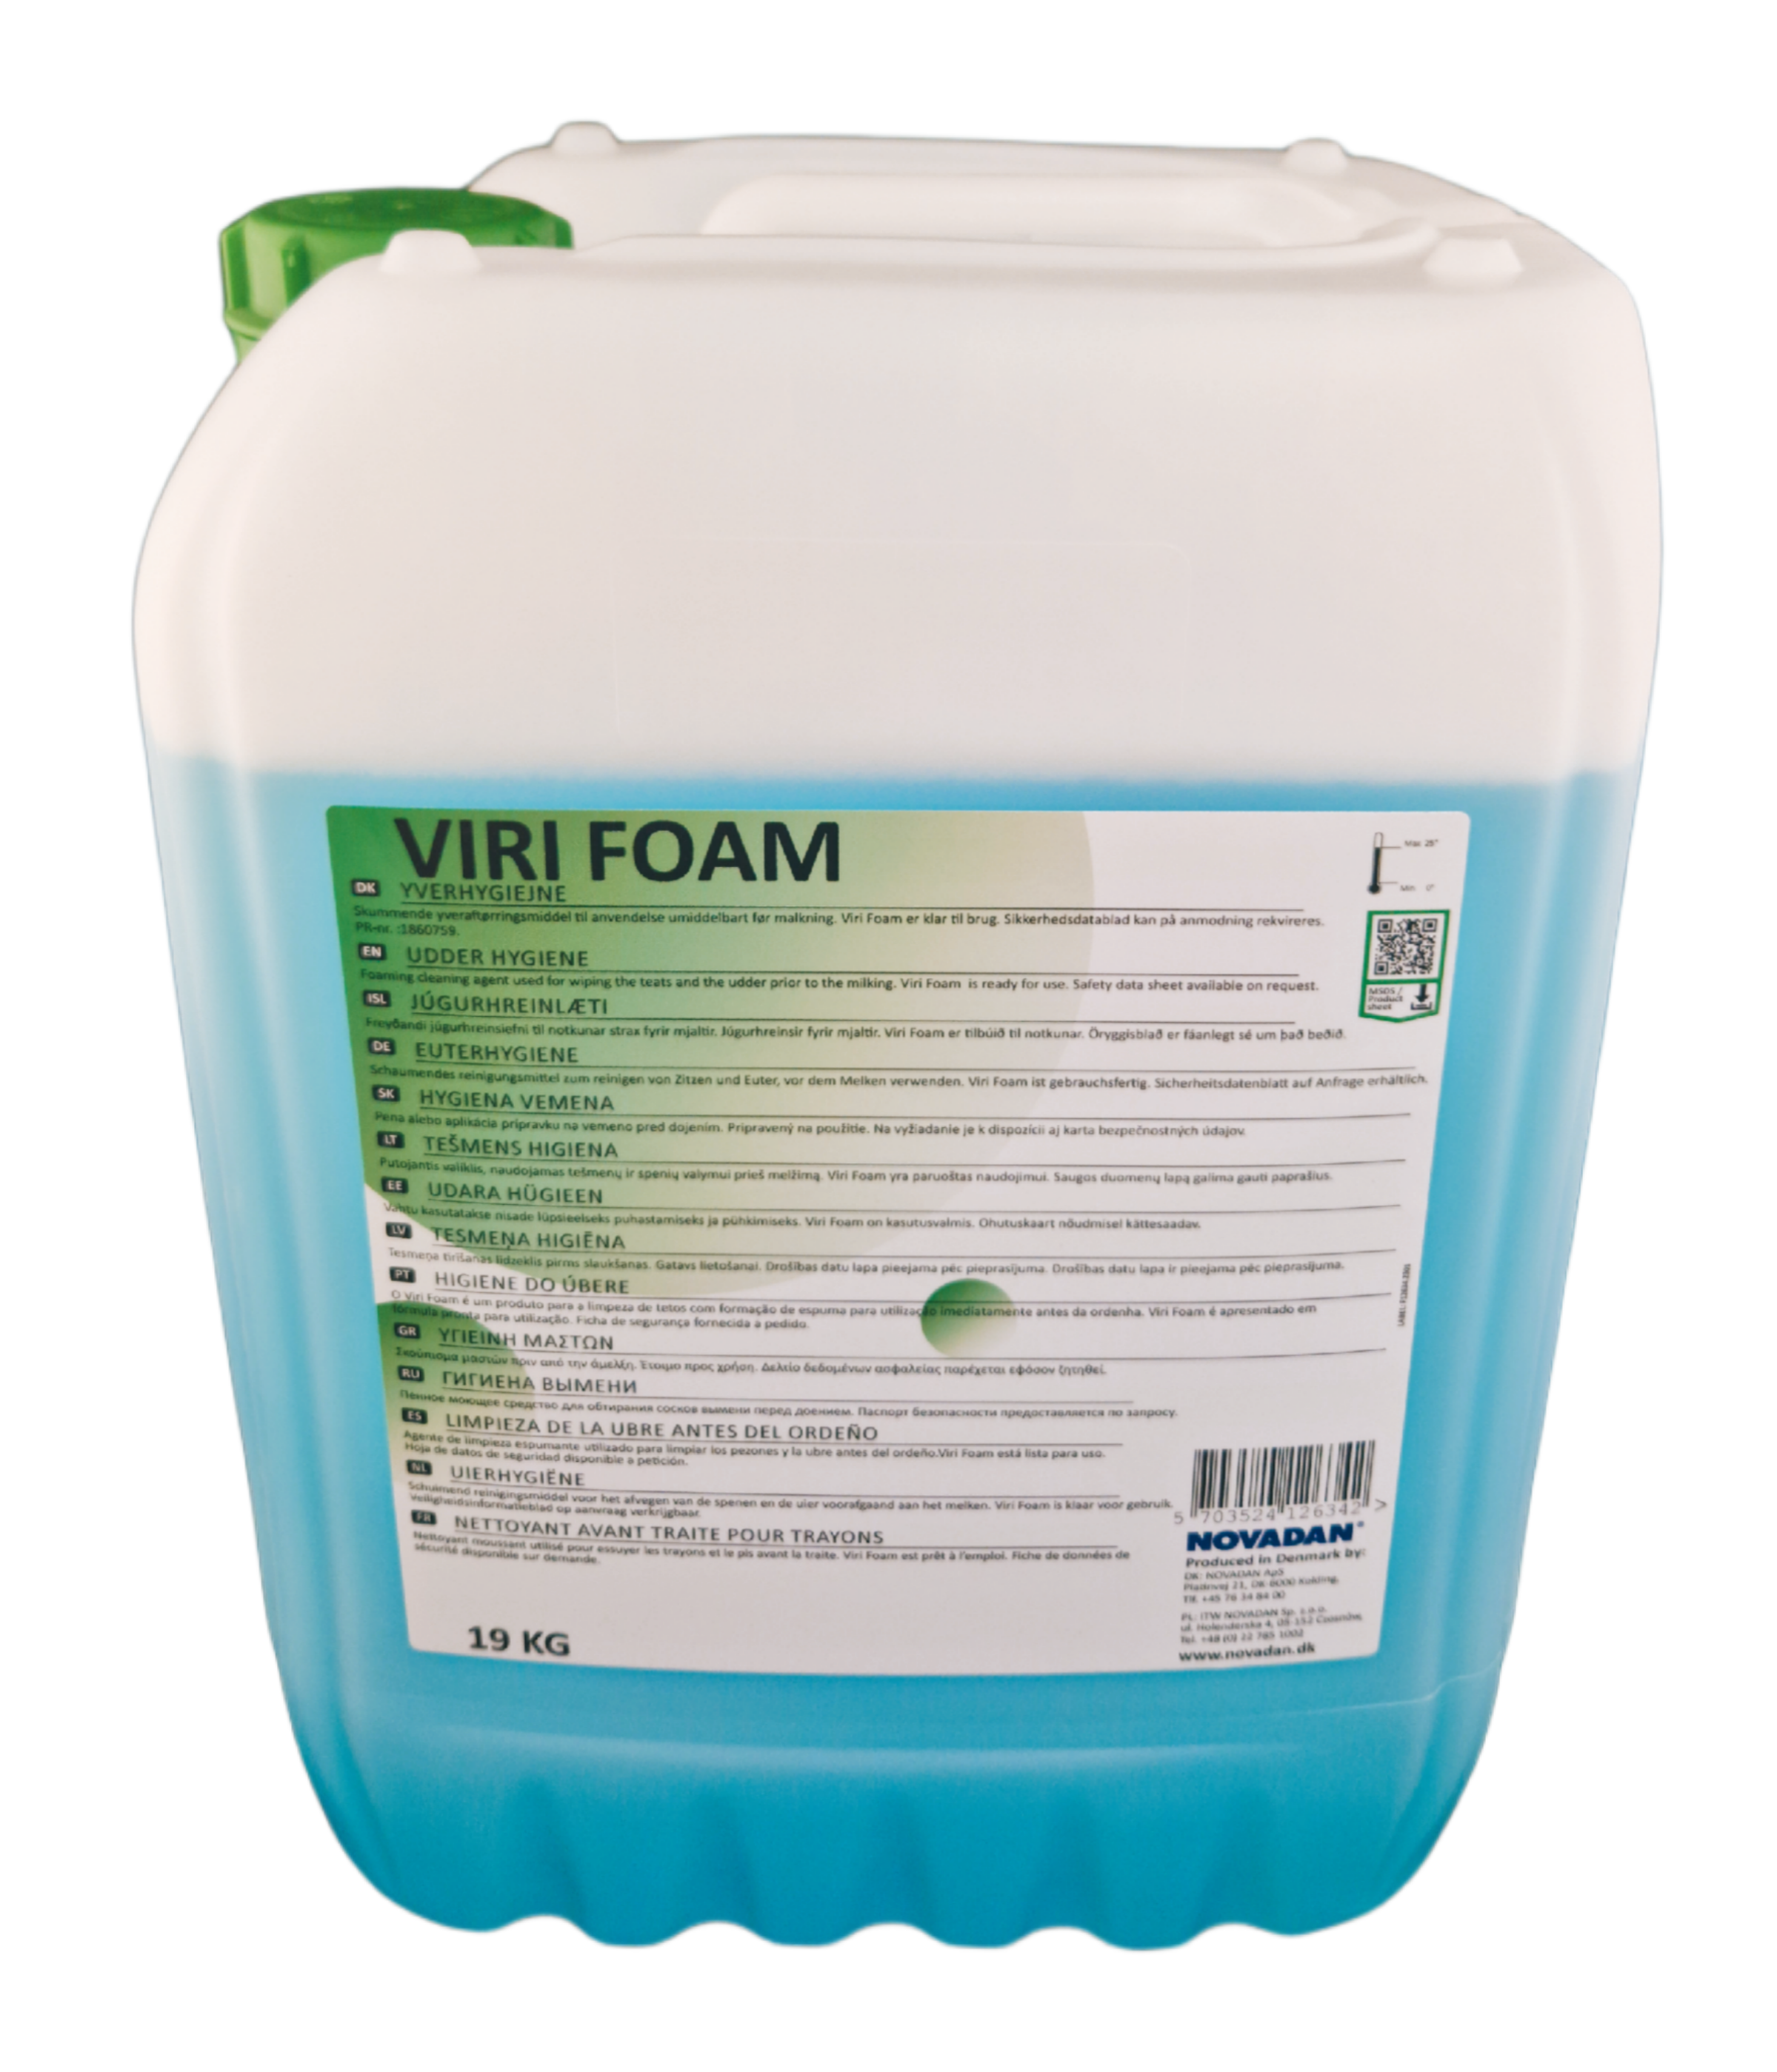 Novadan - Viri Foam schäumendes Euterreinigungsmittel 19 Kg Kanister